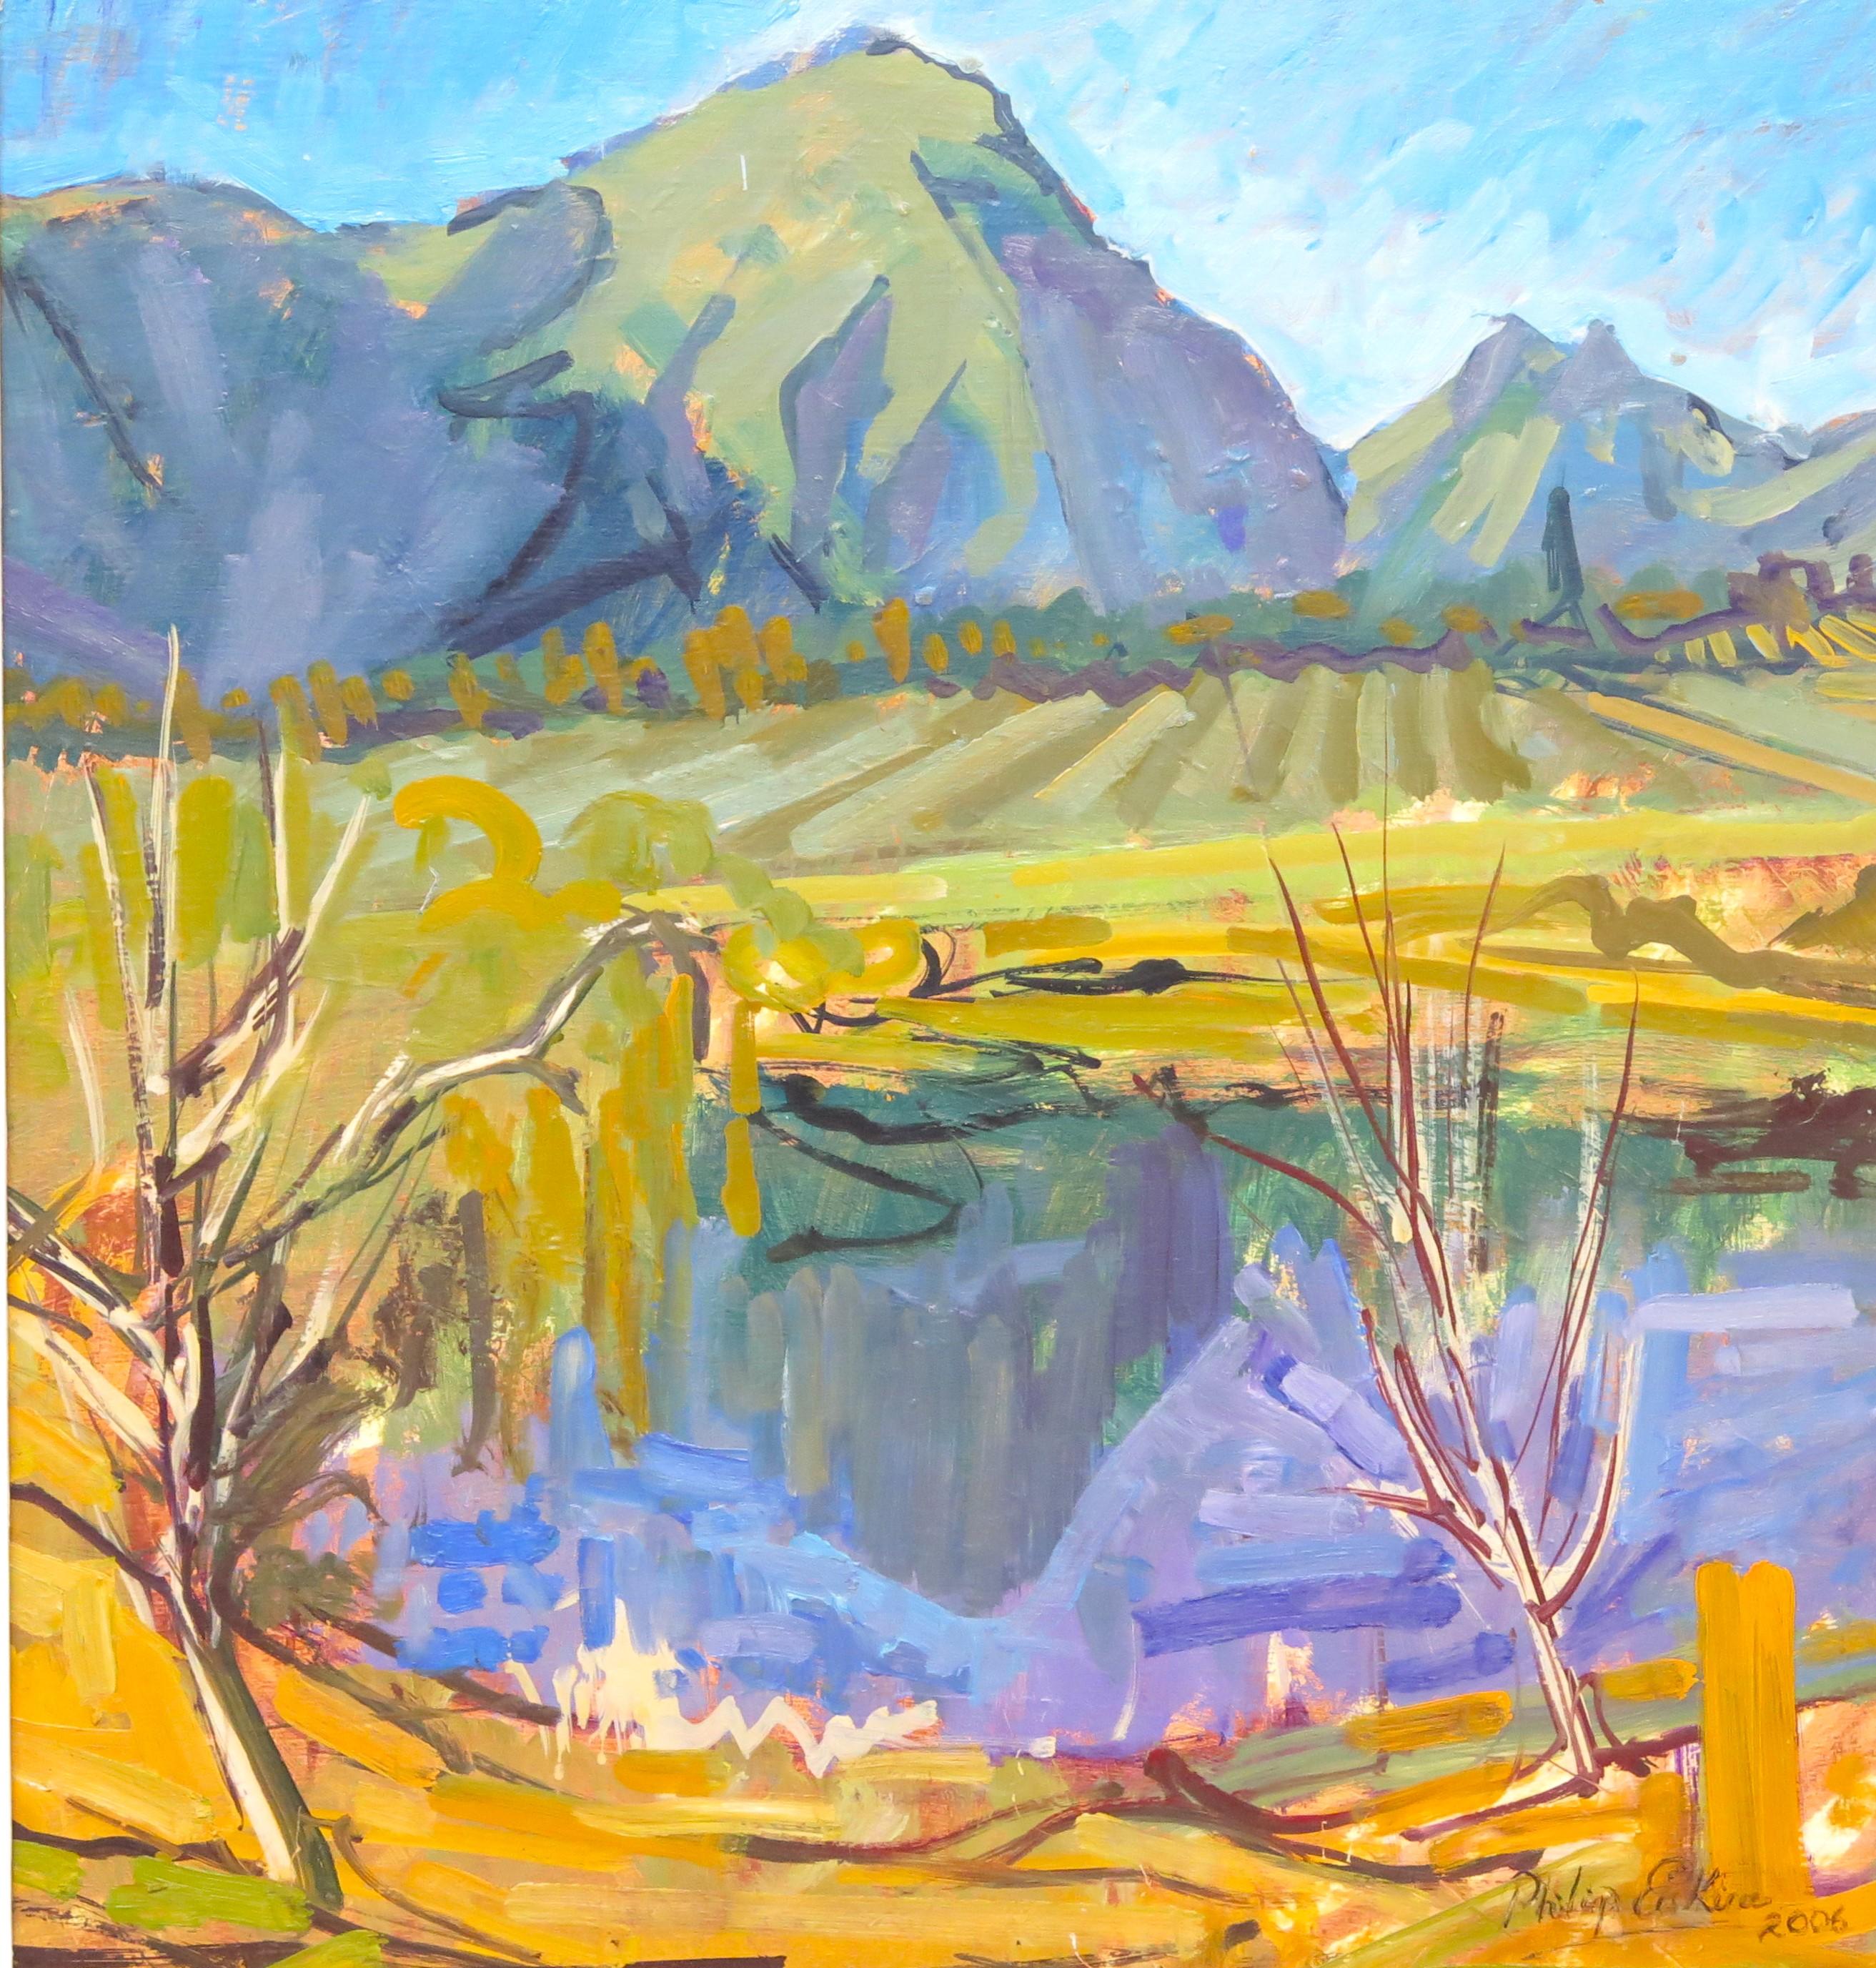 huile sur toile paysage de Philip Erskine (Afrique du Sud 1933- ) Philip Erskine est un peintre sud-africain d'après-guerre et contemporain né en 1933, en Afrique du Sud, en 2006.

signé et daté au recto en bas à droite

36